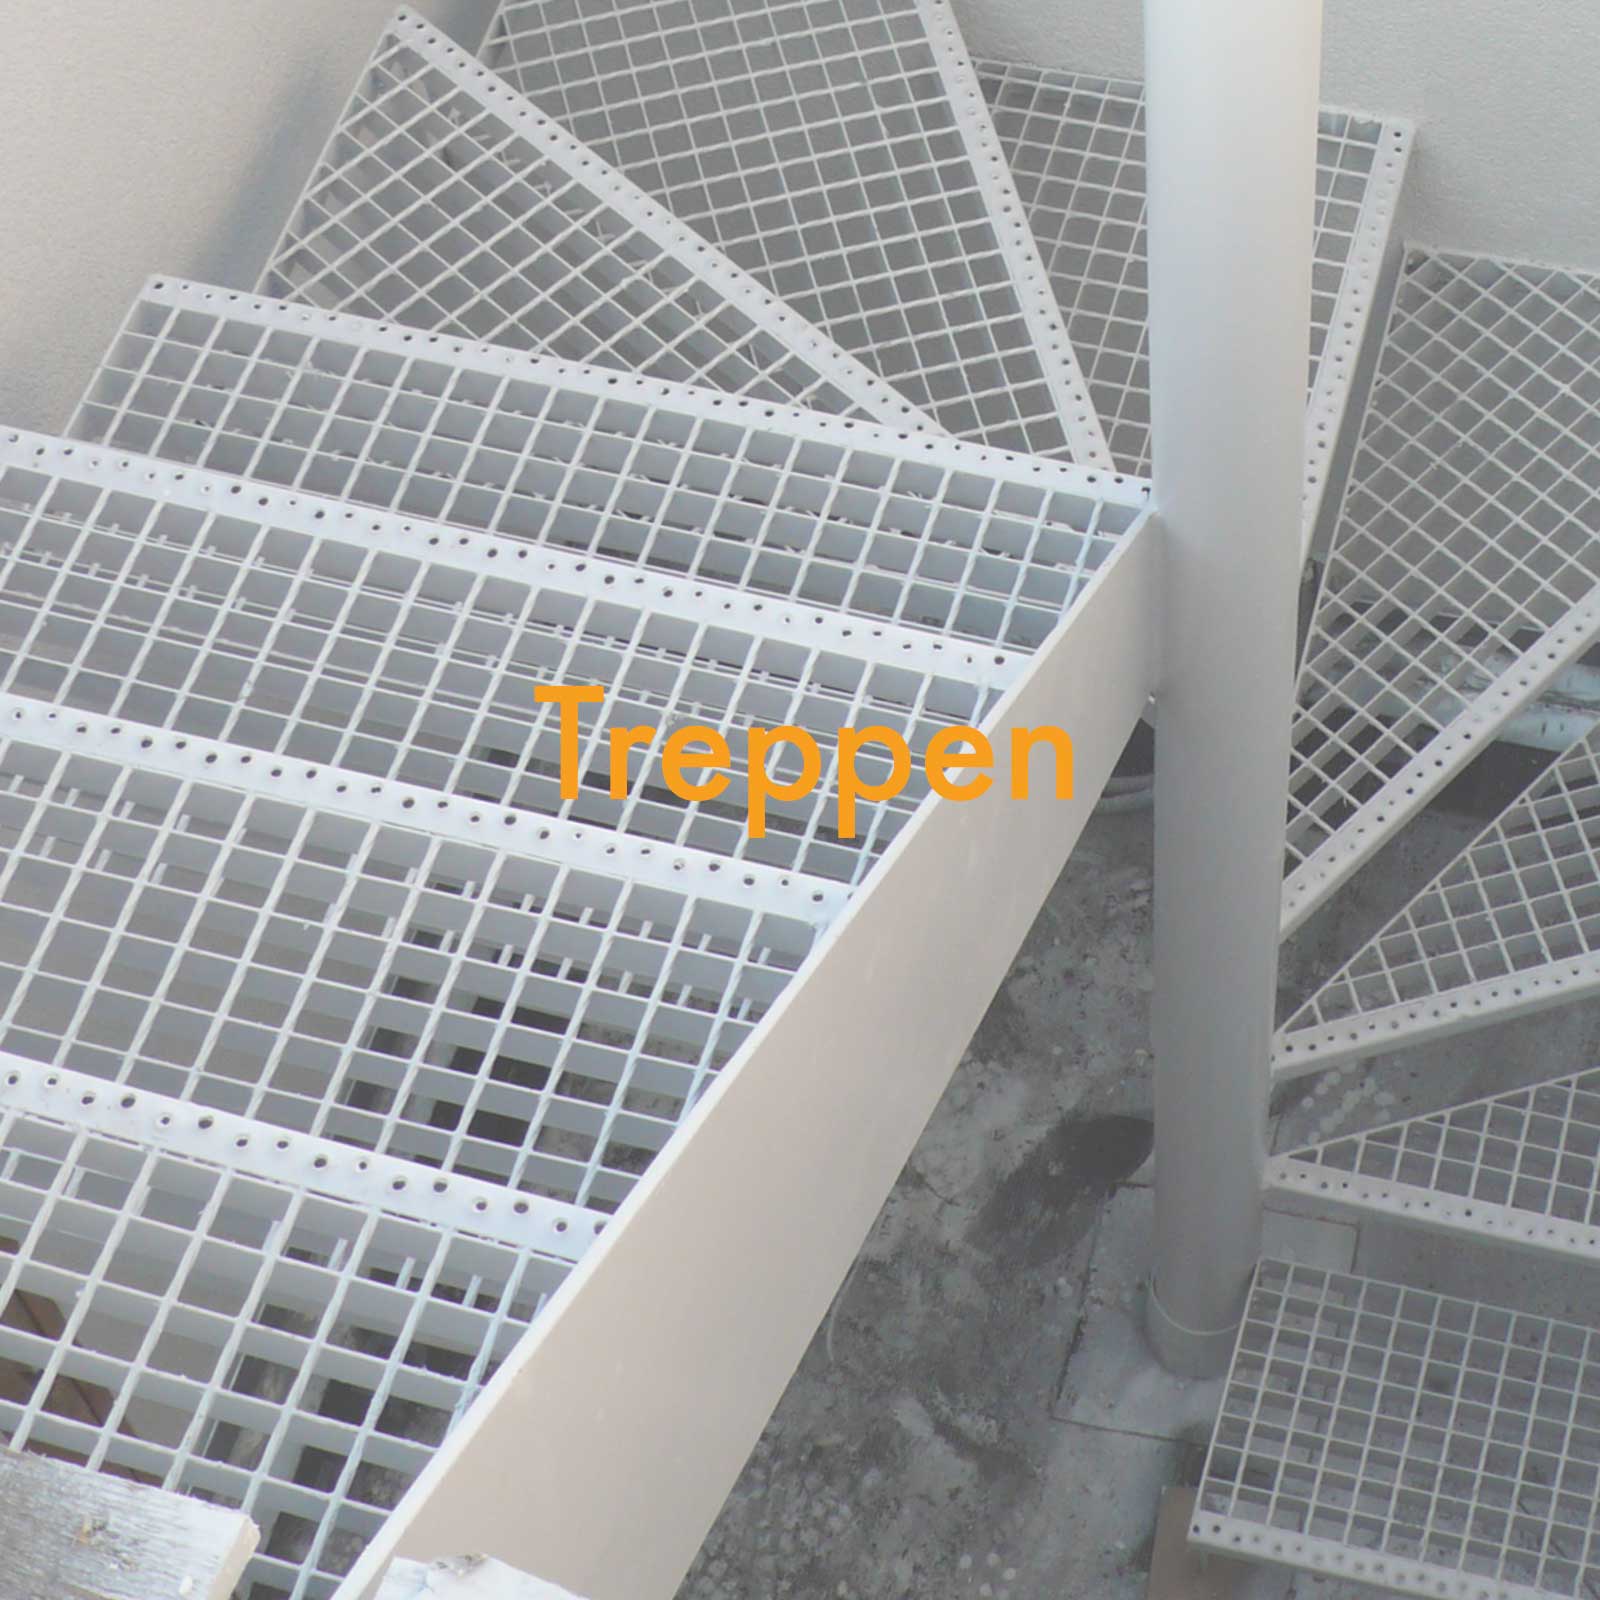 02-Treppen.jpg